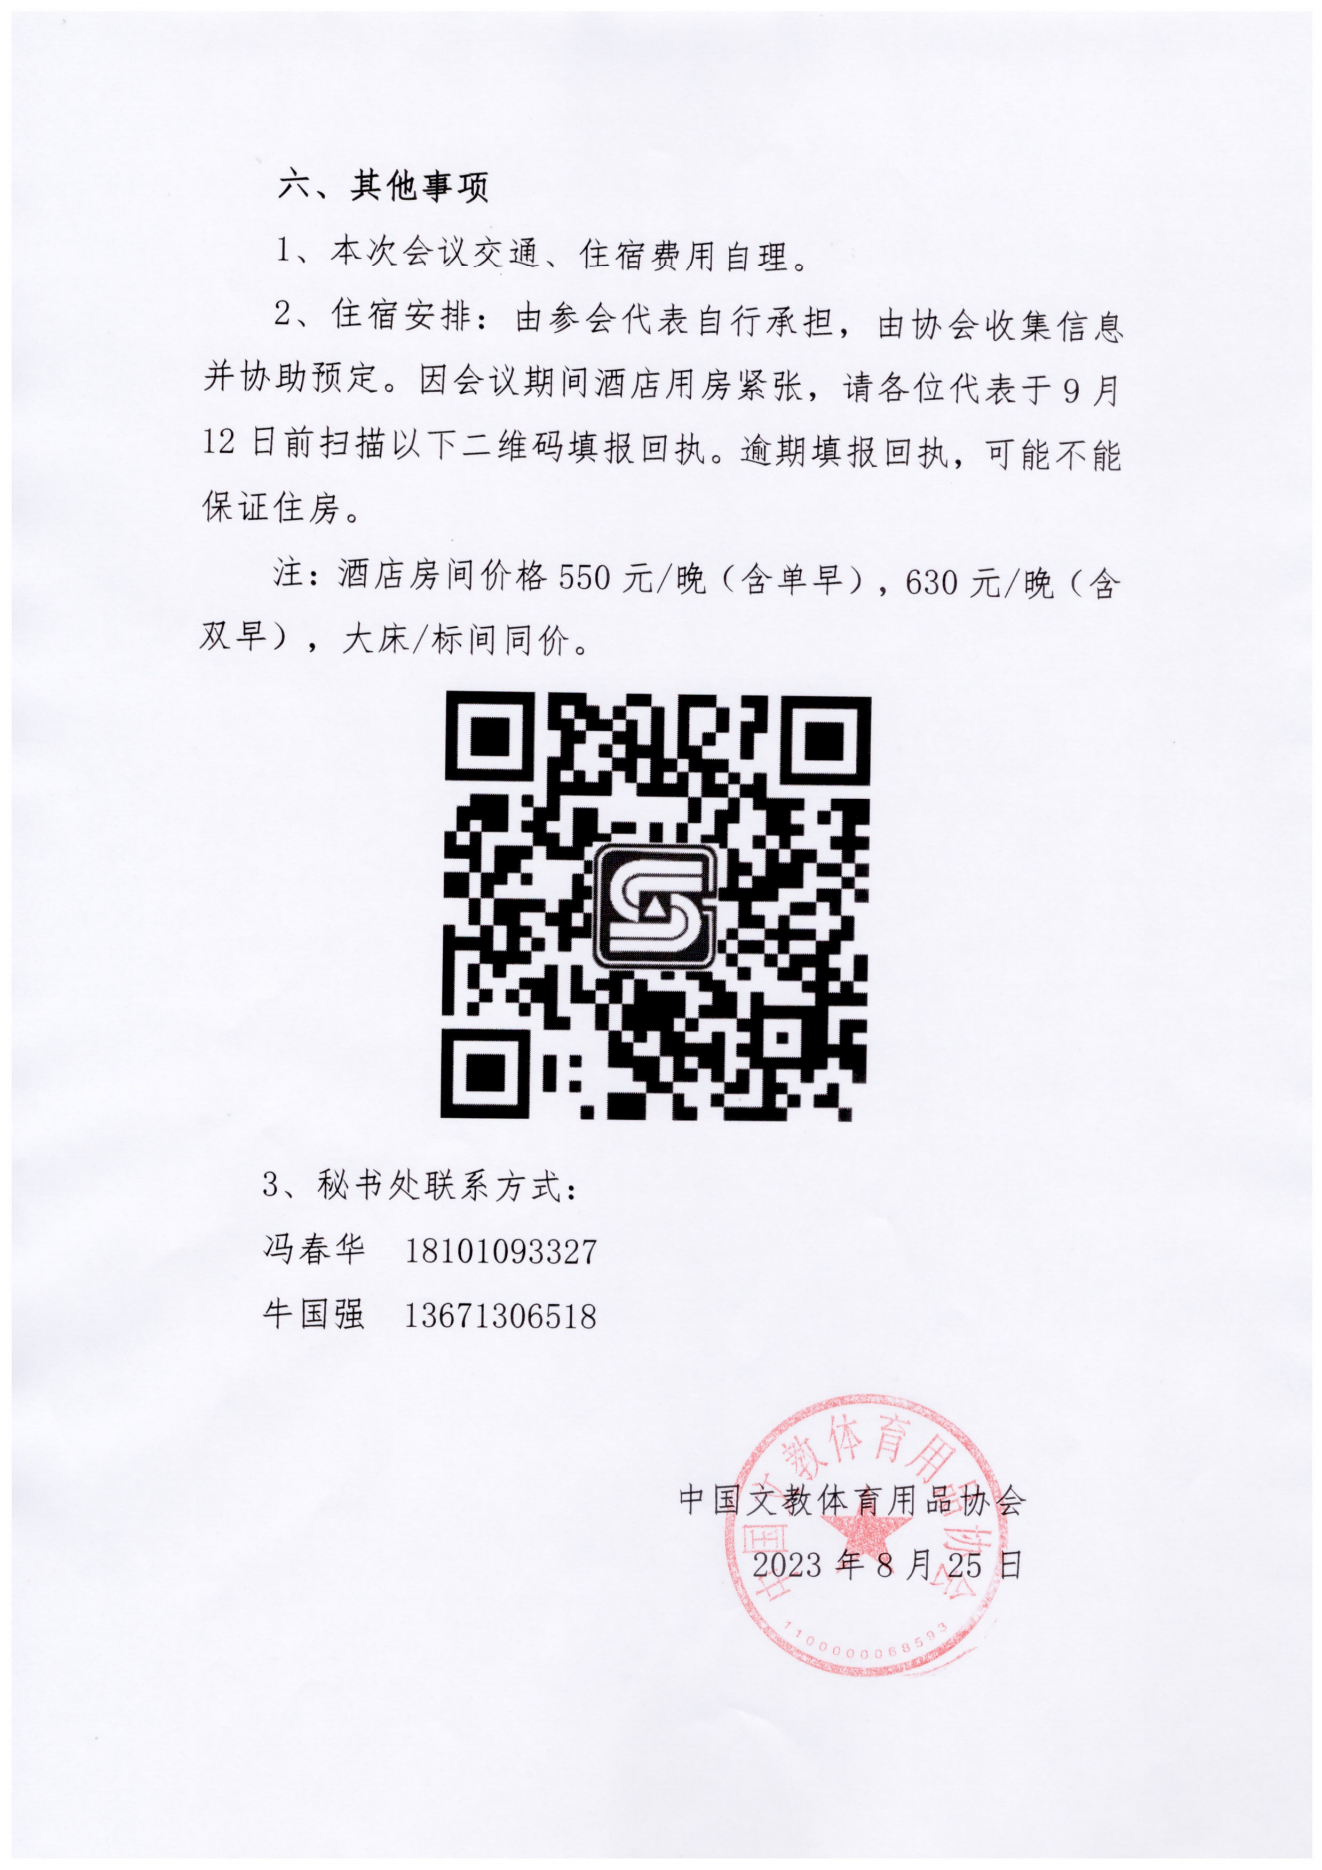 关于召开中国文教体育用品行业青年企业家峰会的通知_02.png